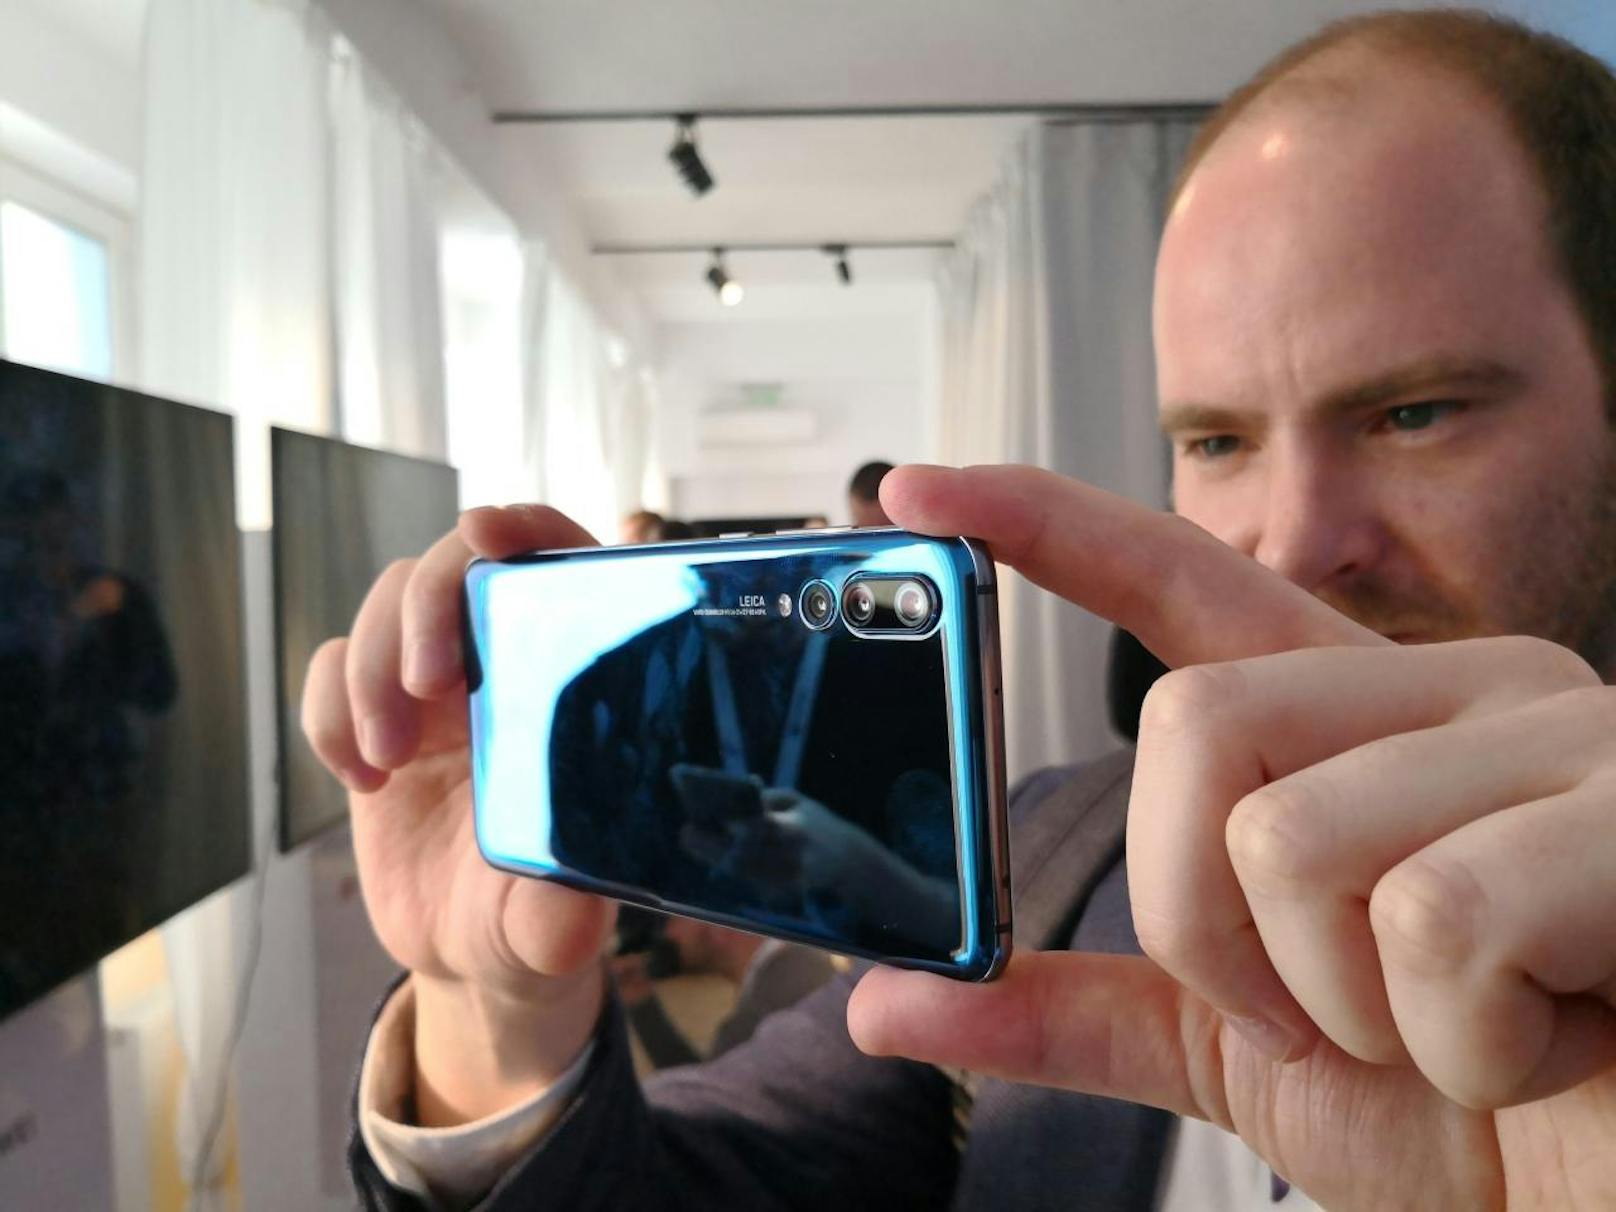 Huawei hat die neue Smartphone-Serie P20 in Paris samt Weltneuheit präsentiert. "Heute" konnte das Spitzenmodell P20 Pro bereits testen.